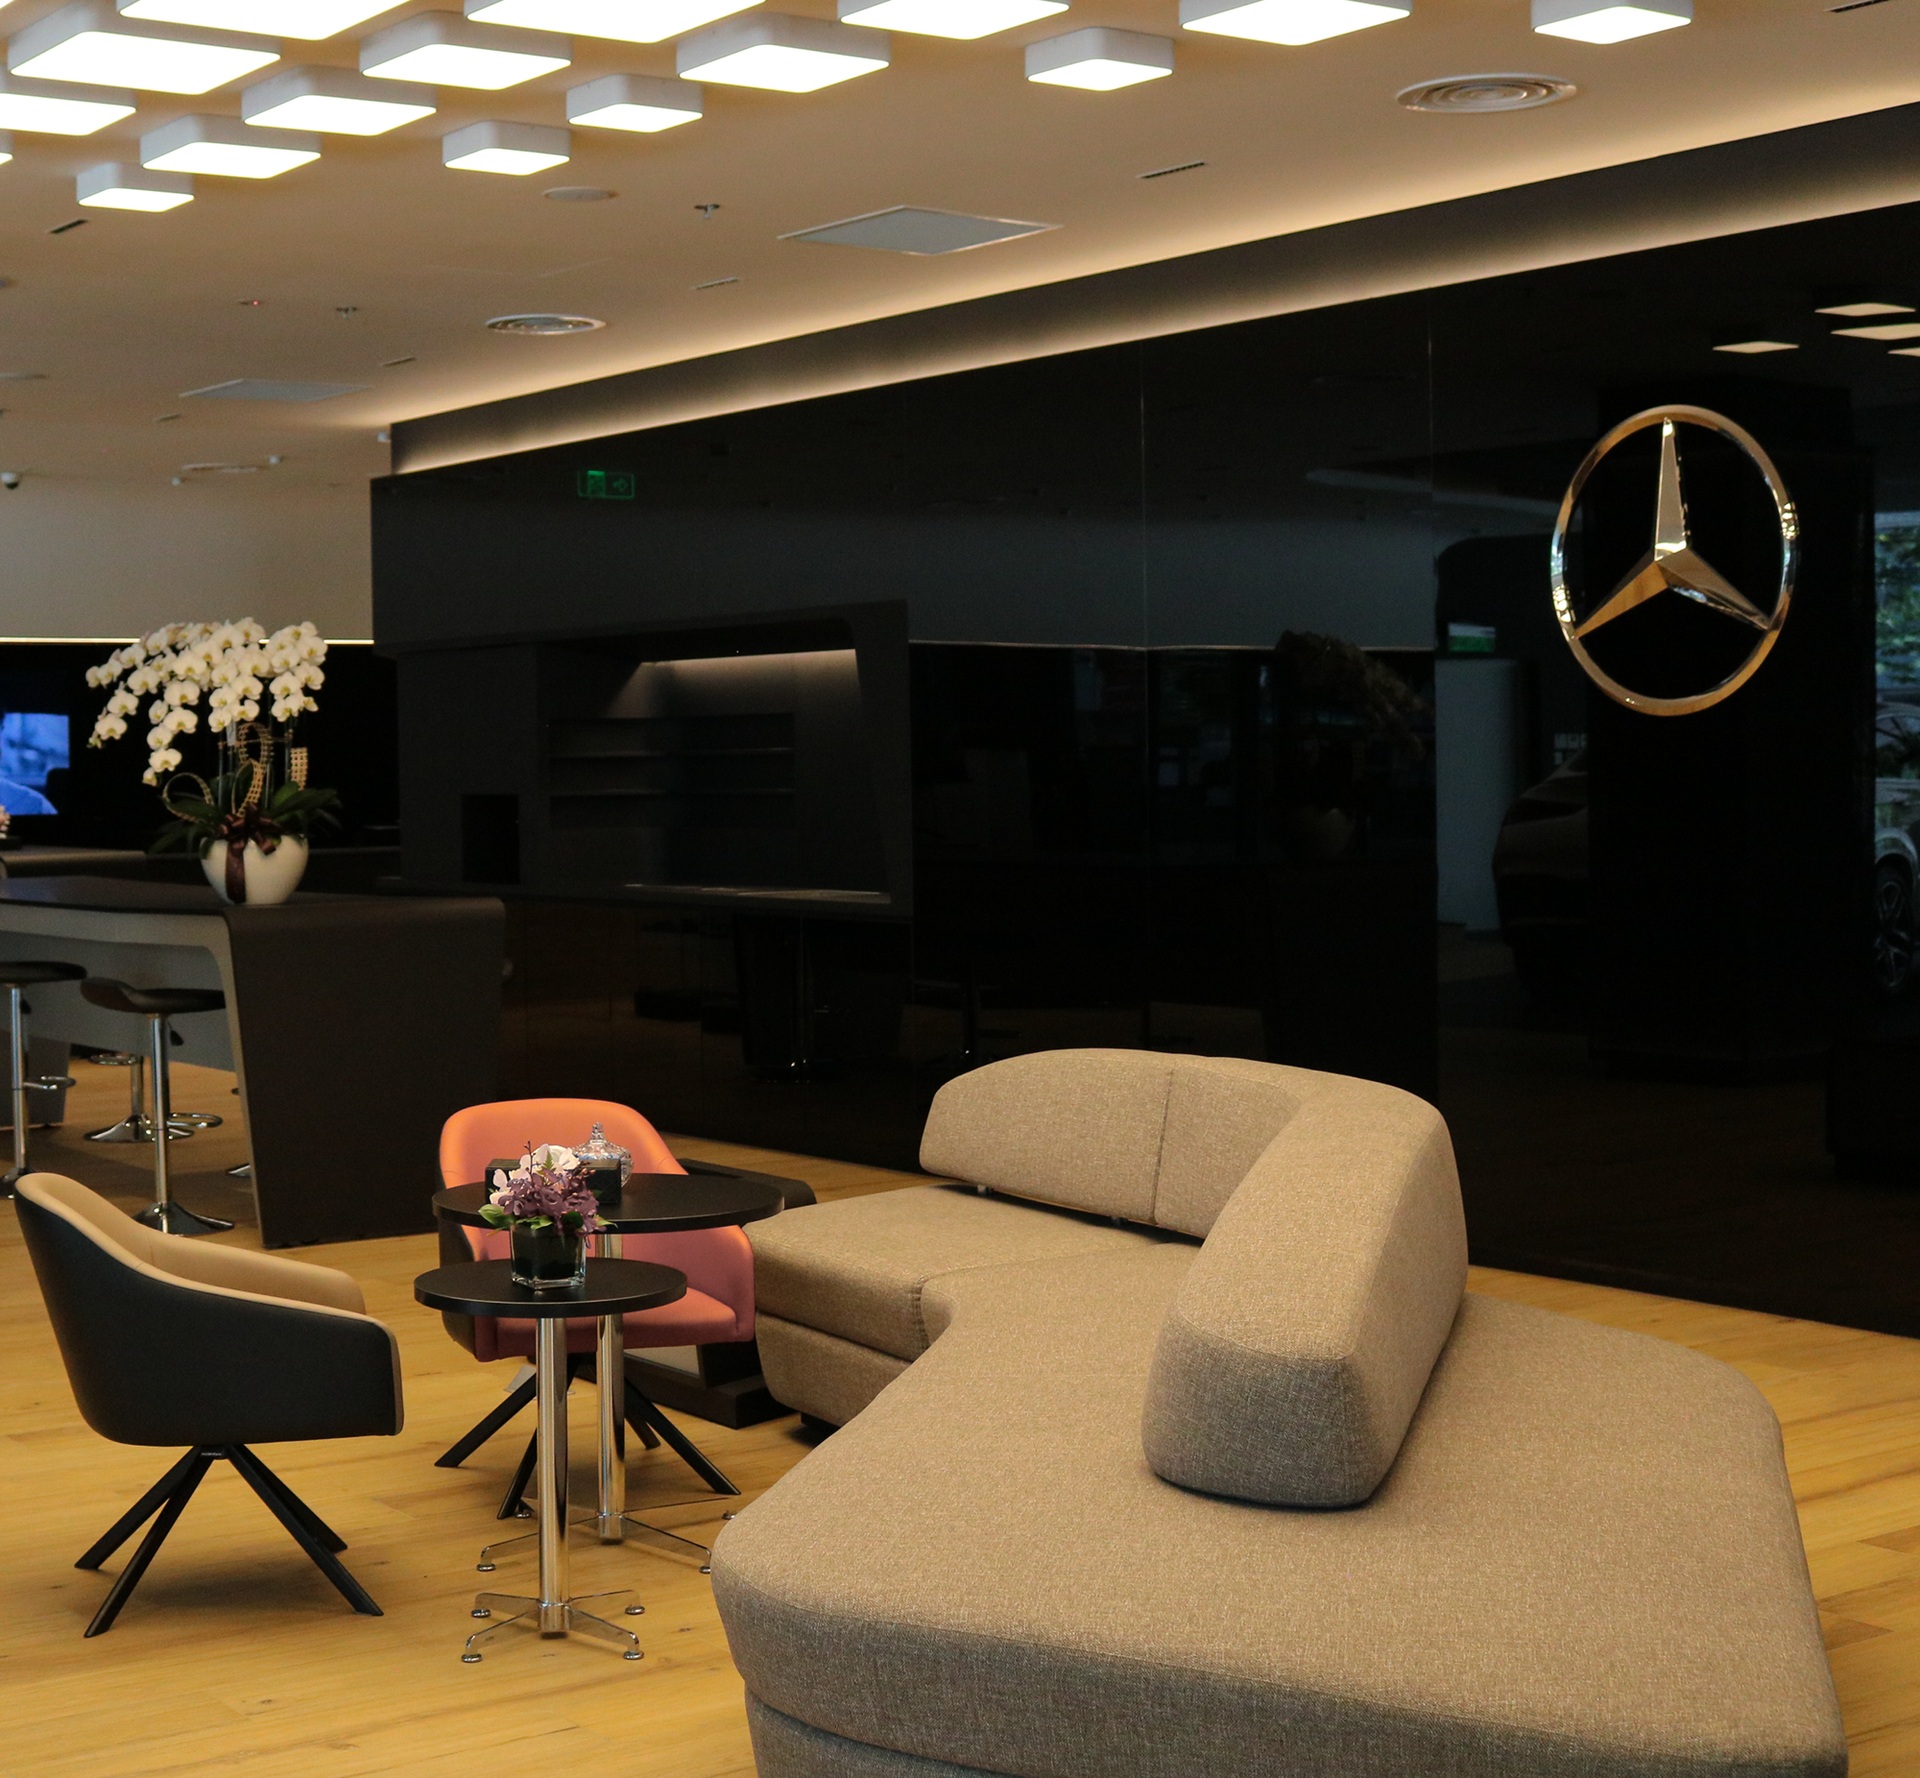 Mercedes-Benz Việt Nam -  Vietnam Star Automobile ra mắt showroom đạt tiêu chuẩn đại lý toàn cầu đầu tiên tại TP.HCM - Ảnh 6.